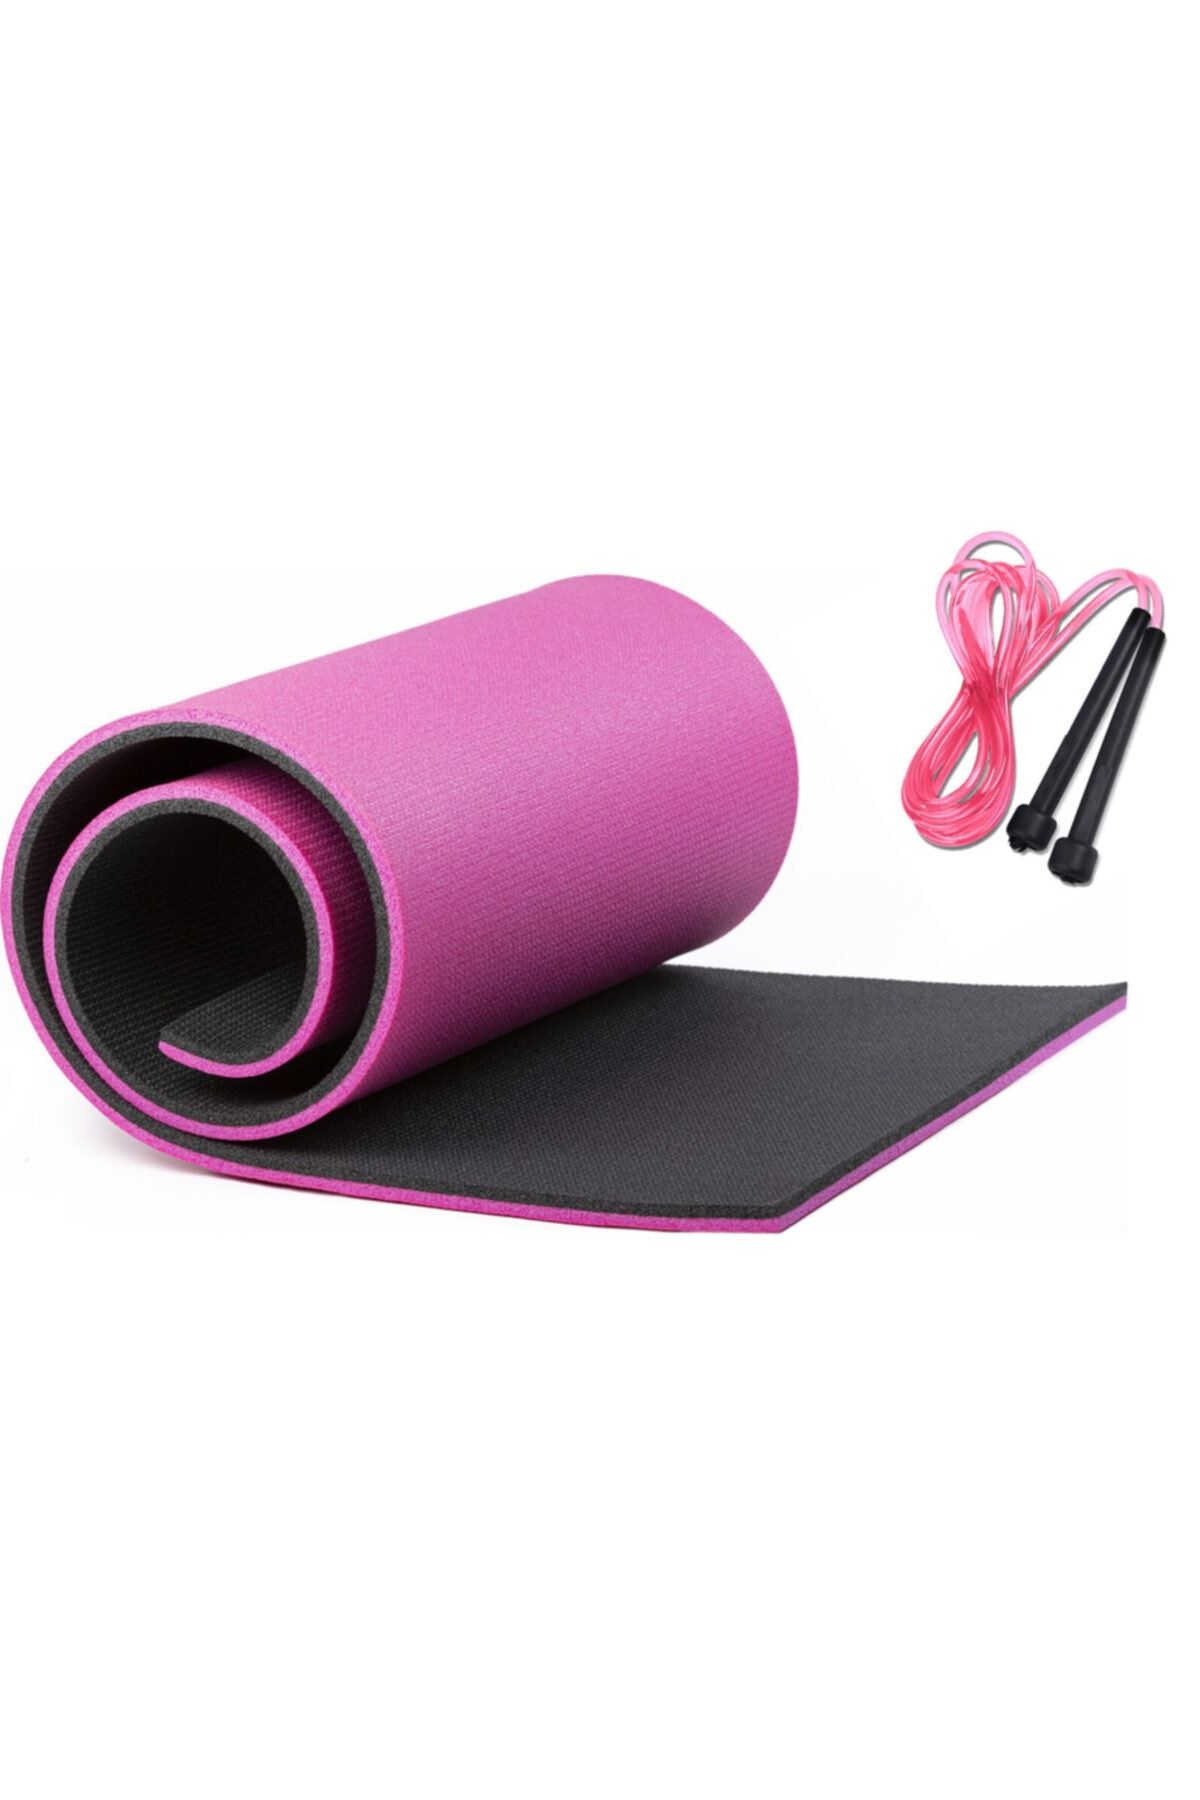 Tosima Pilates Yoga Egzersiz Minderi 16 mm Atlama İpi Set